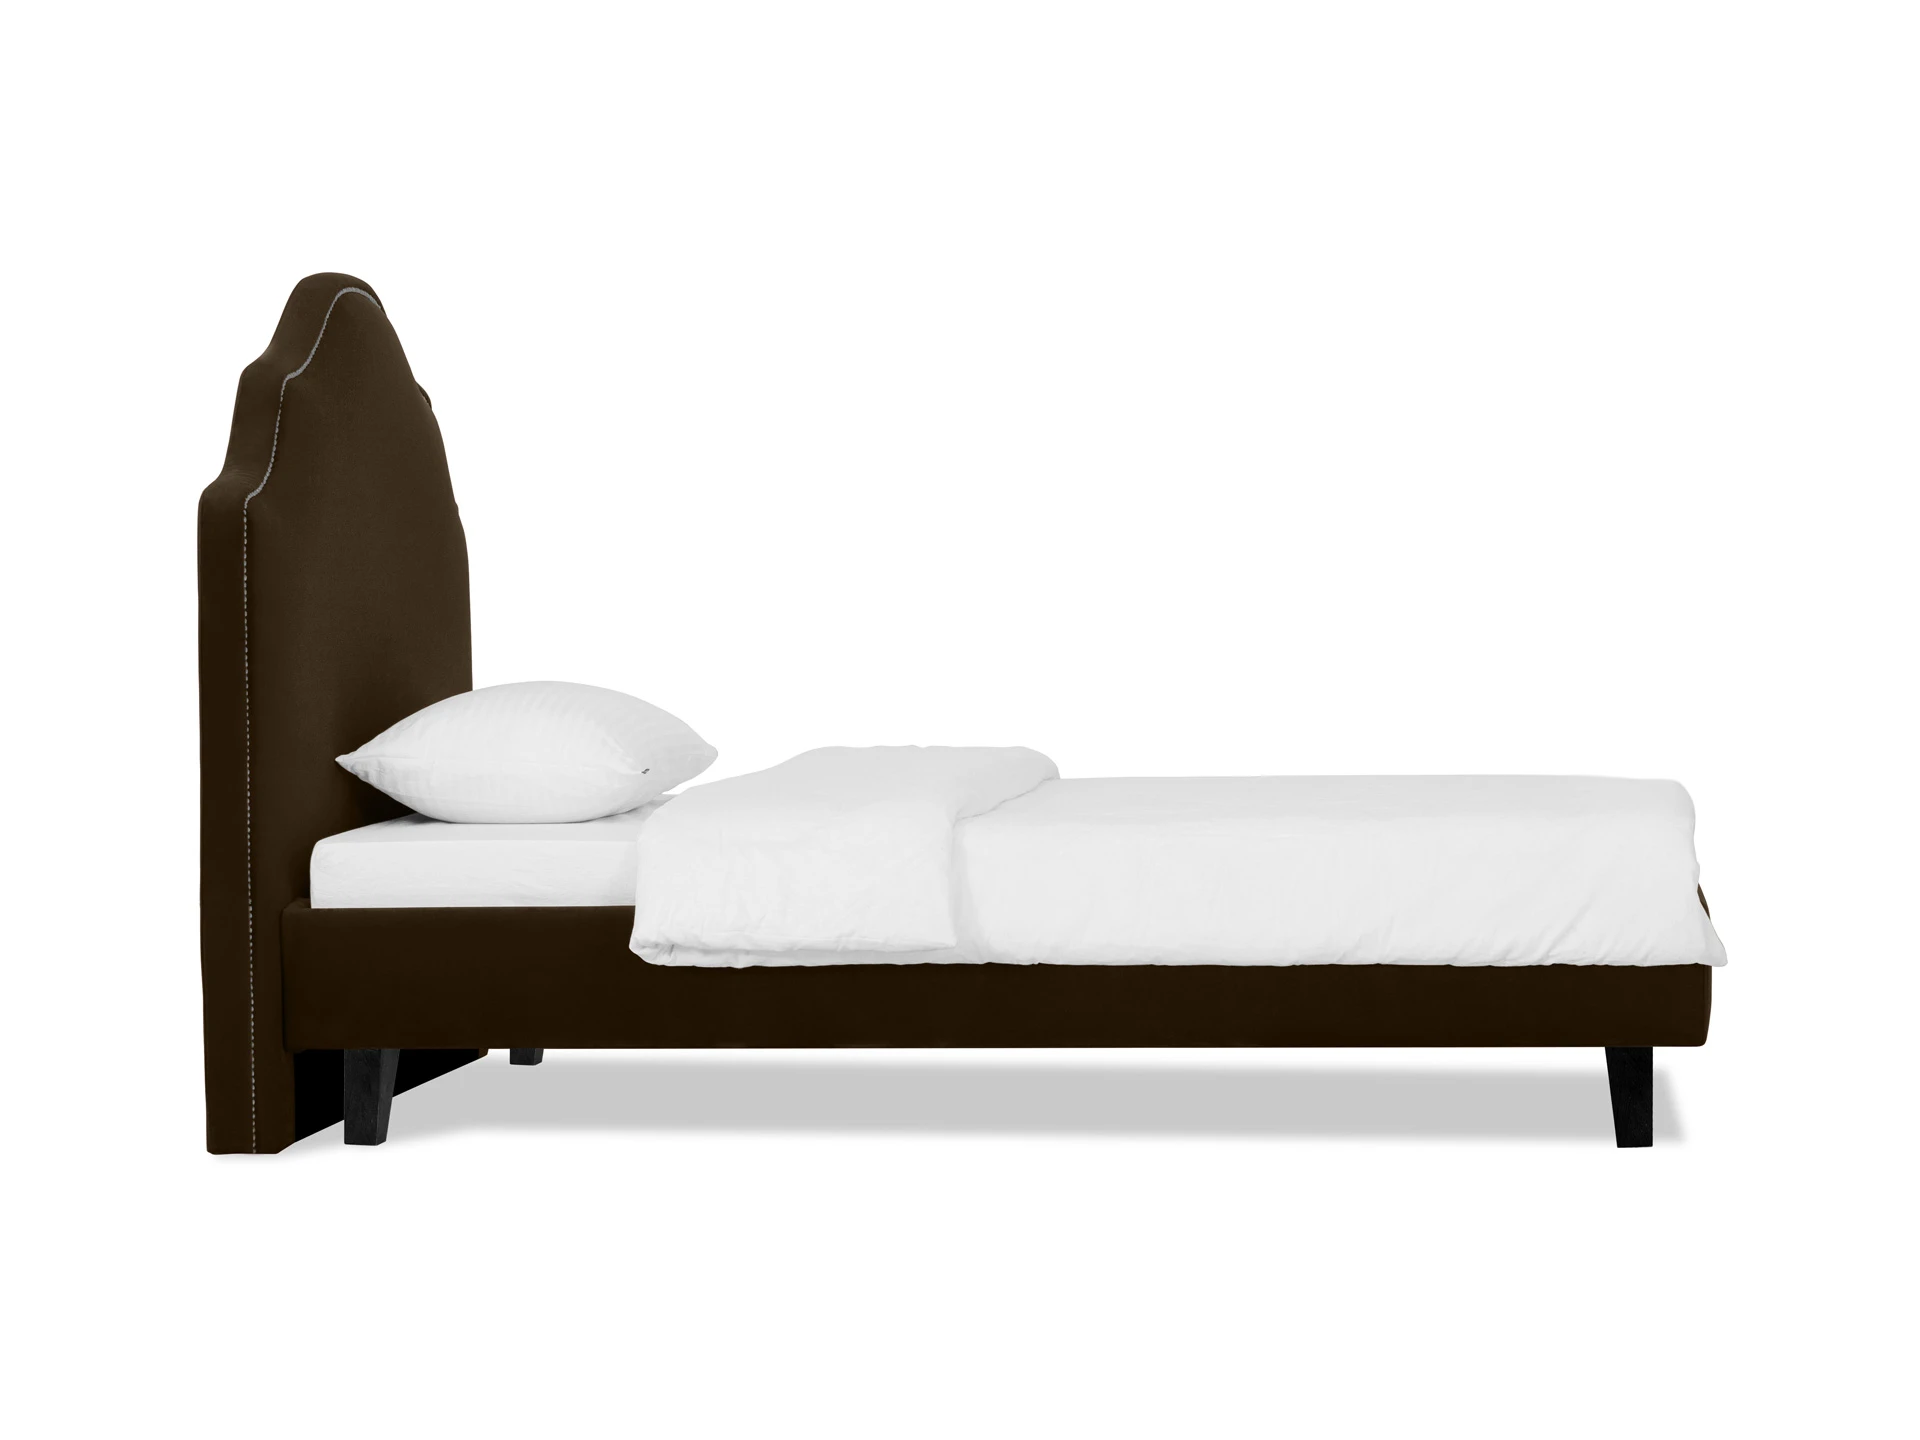 Кровать Princess II L 575164